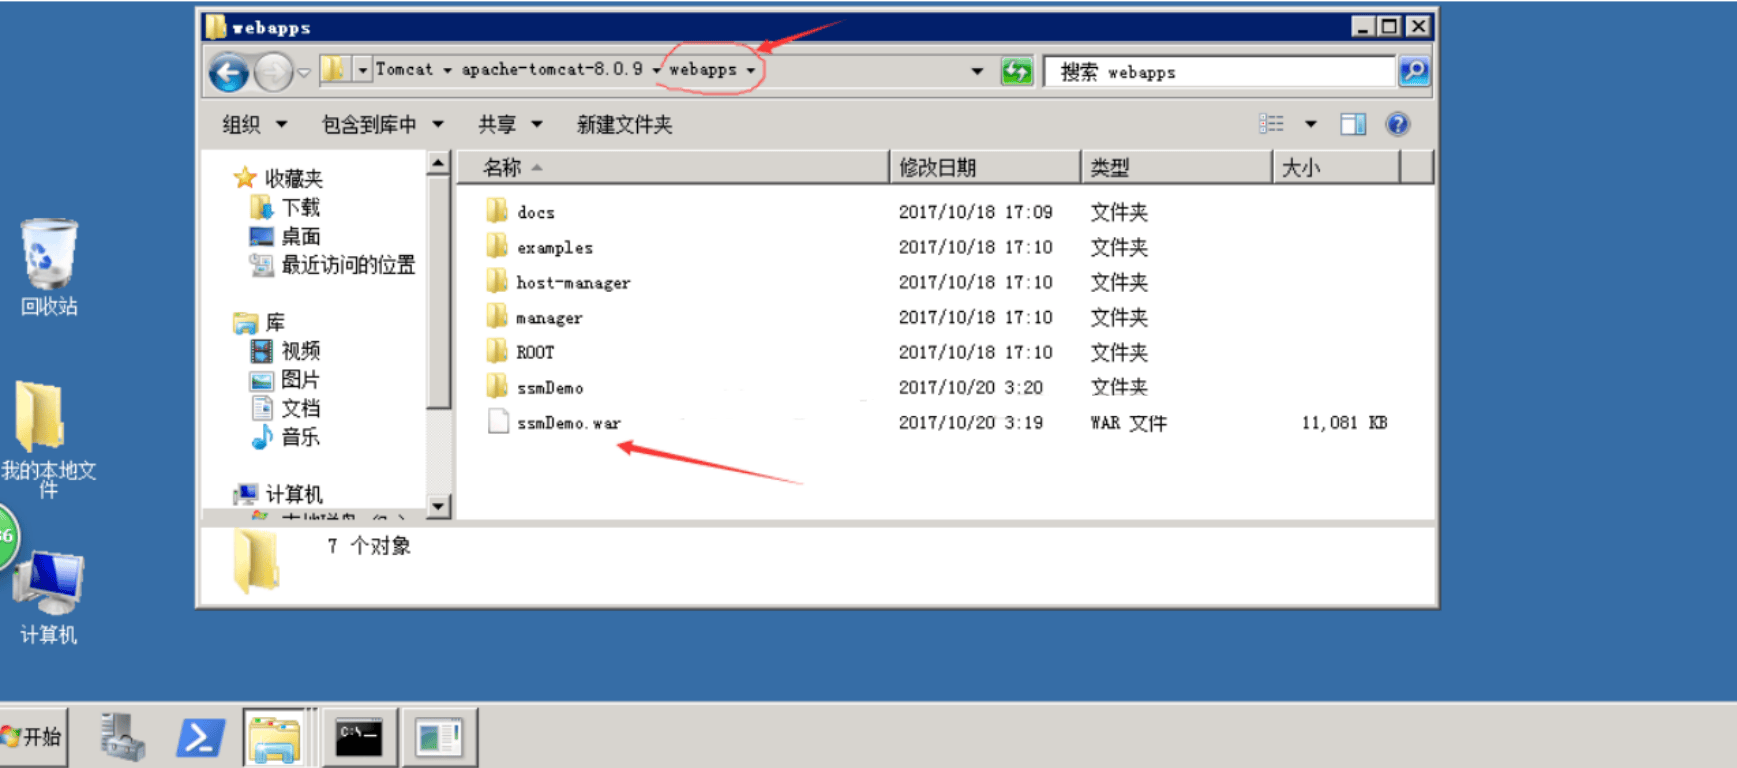 香港期期准资料大全_AI时代云存储服务器的理想之选 拓普龙M465-36品质出众